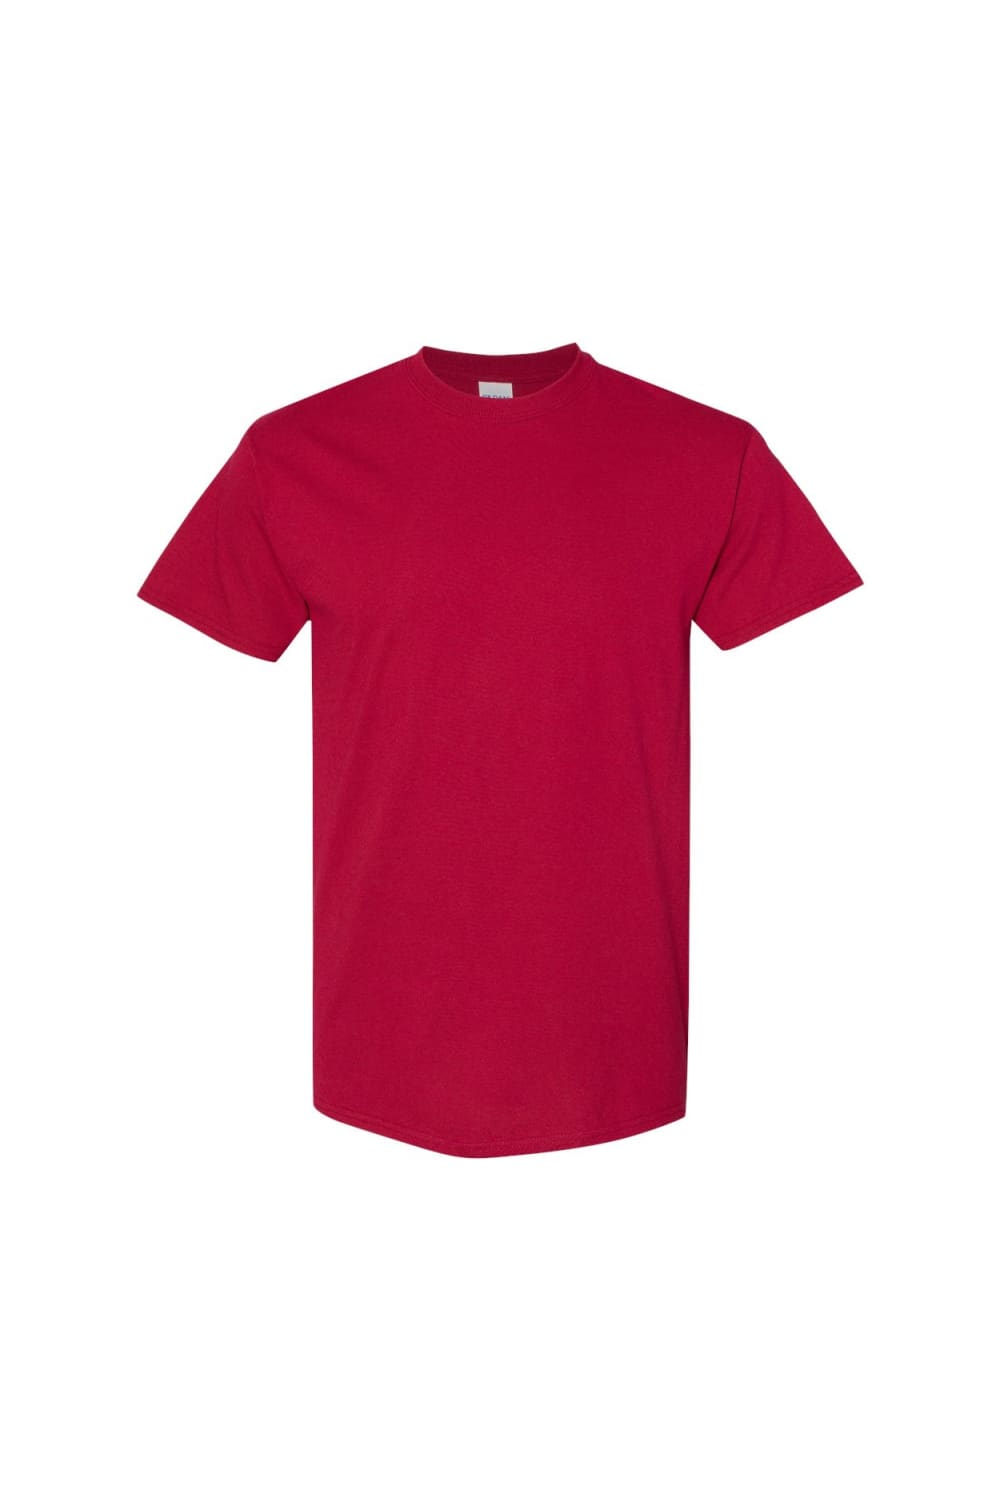 Gildan Mens Heavy Cotton Short Sleeve T-Shirt (Pack of 5) (Cardinal)